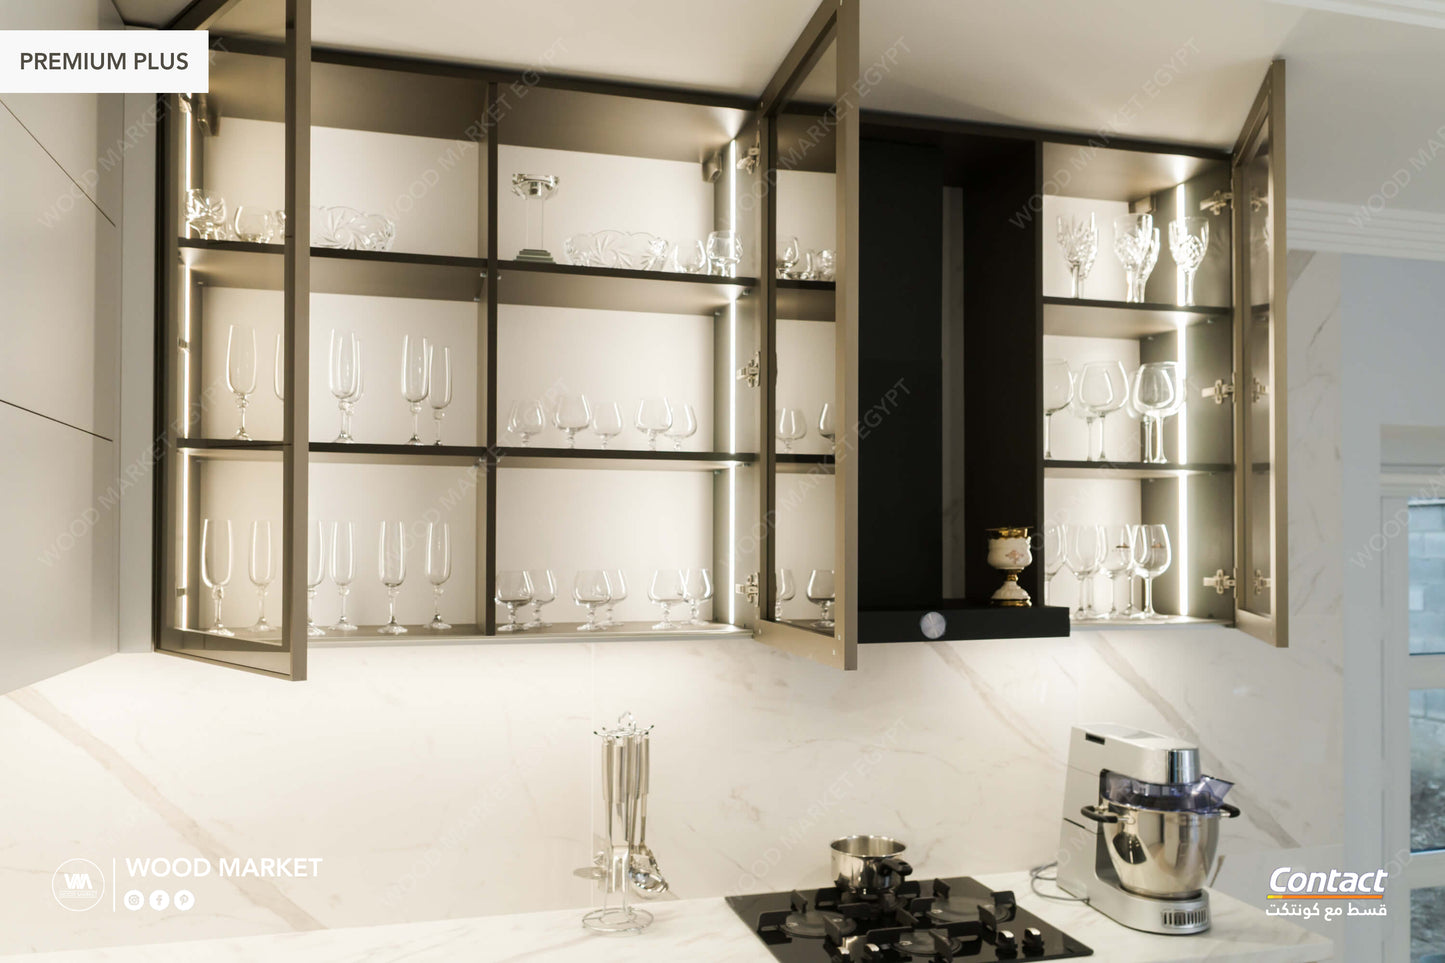 White Luxury kitchen